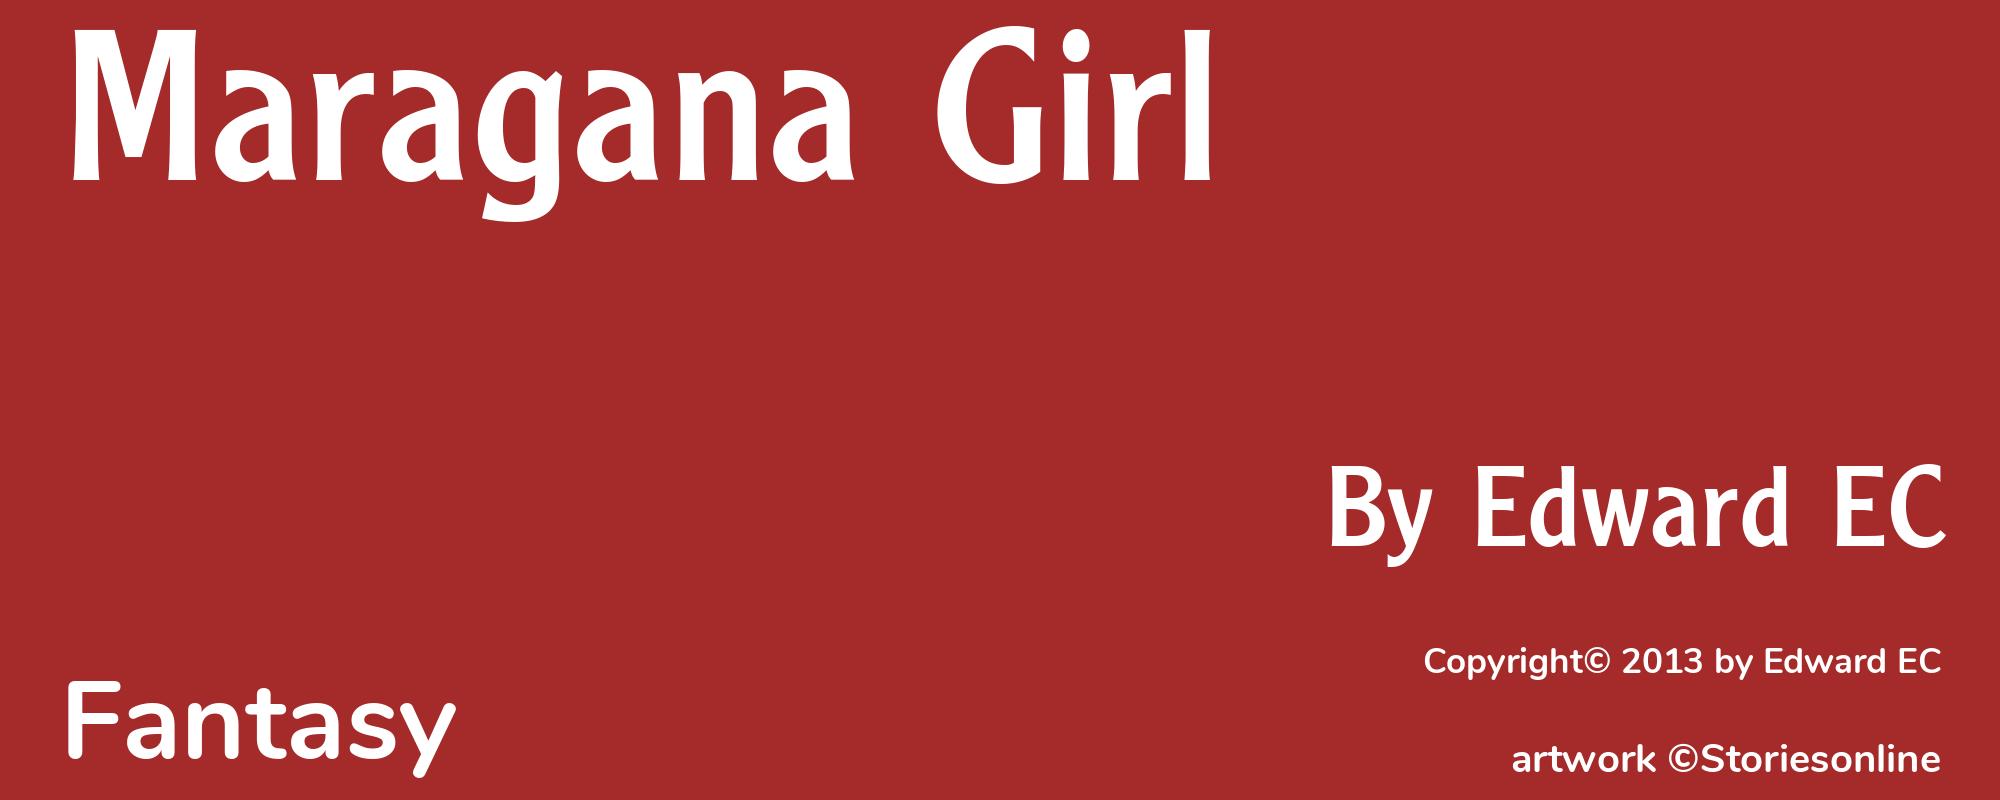 Maragana Girl - Cover